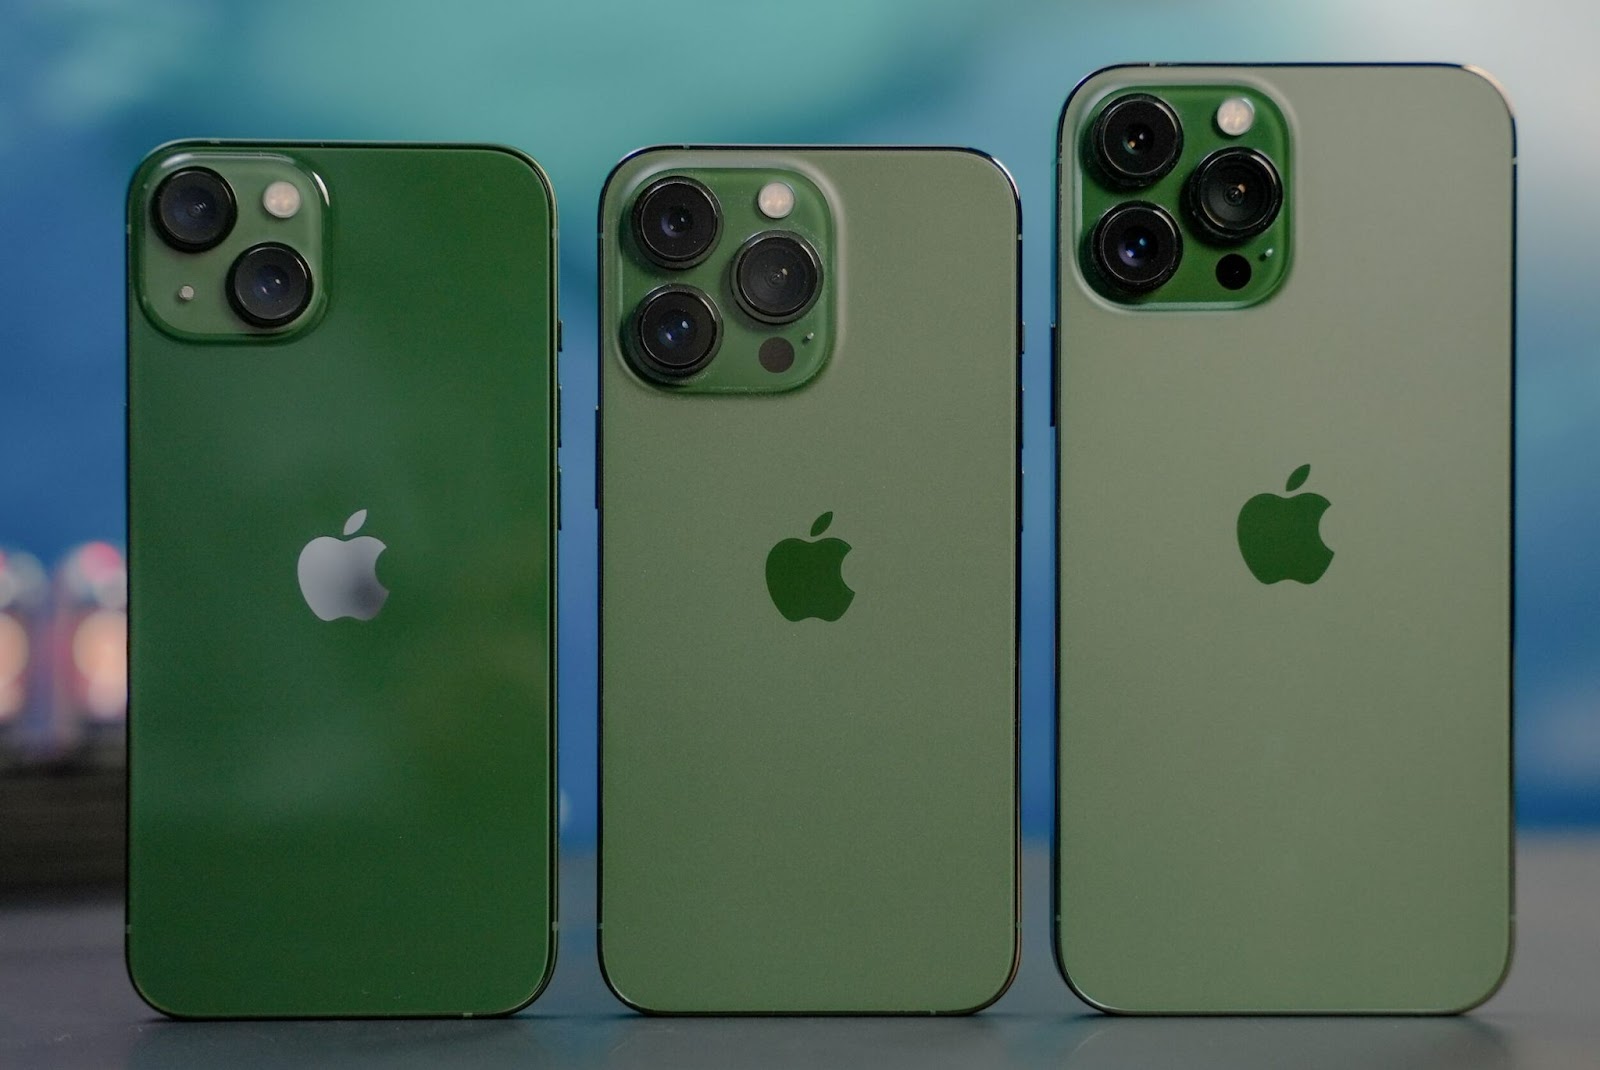 iPhone 13 Pro Max xanh rêu rớt giá mạnh sau một tuần về Việt Nam - Ảnh 1.